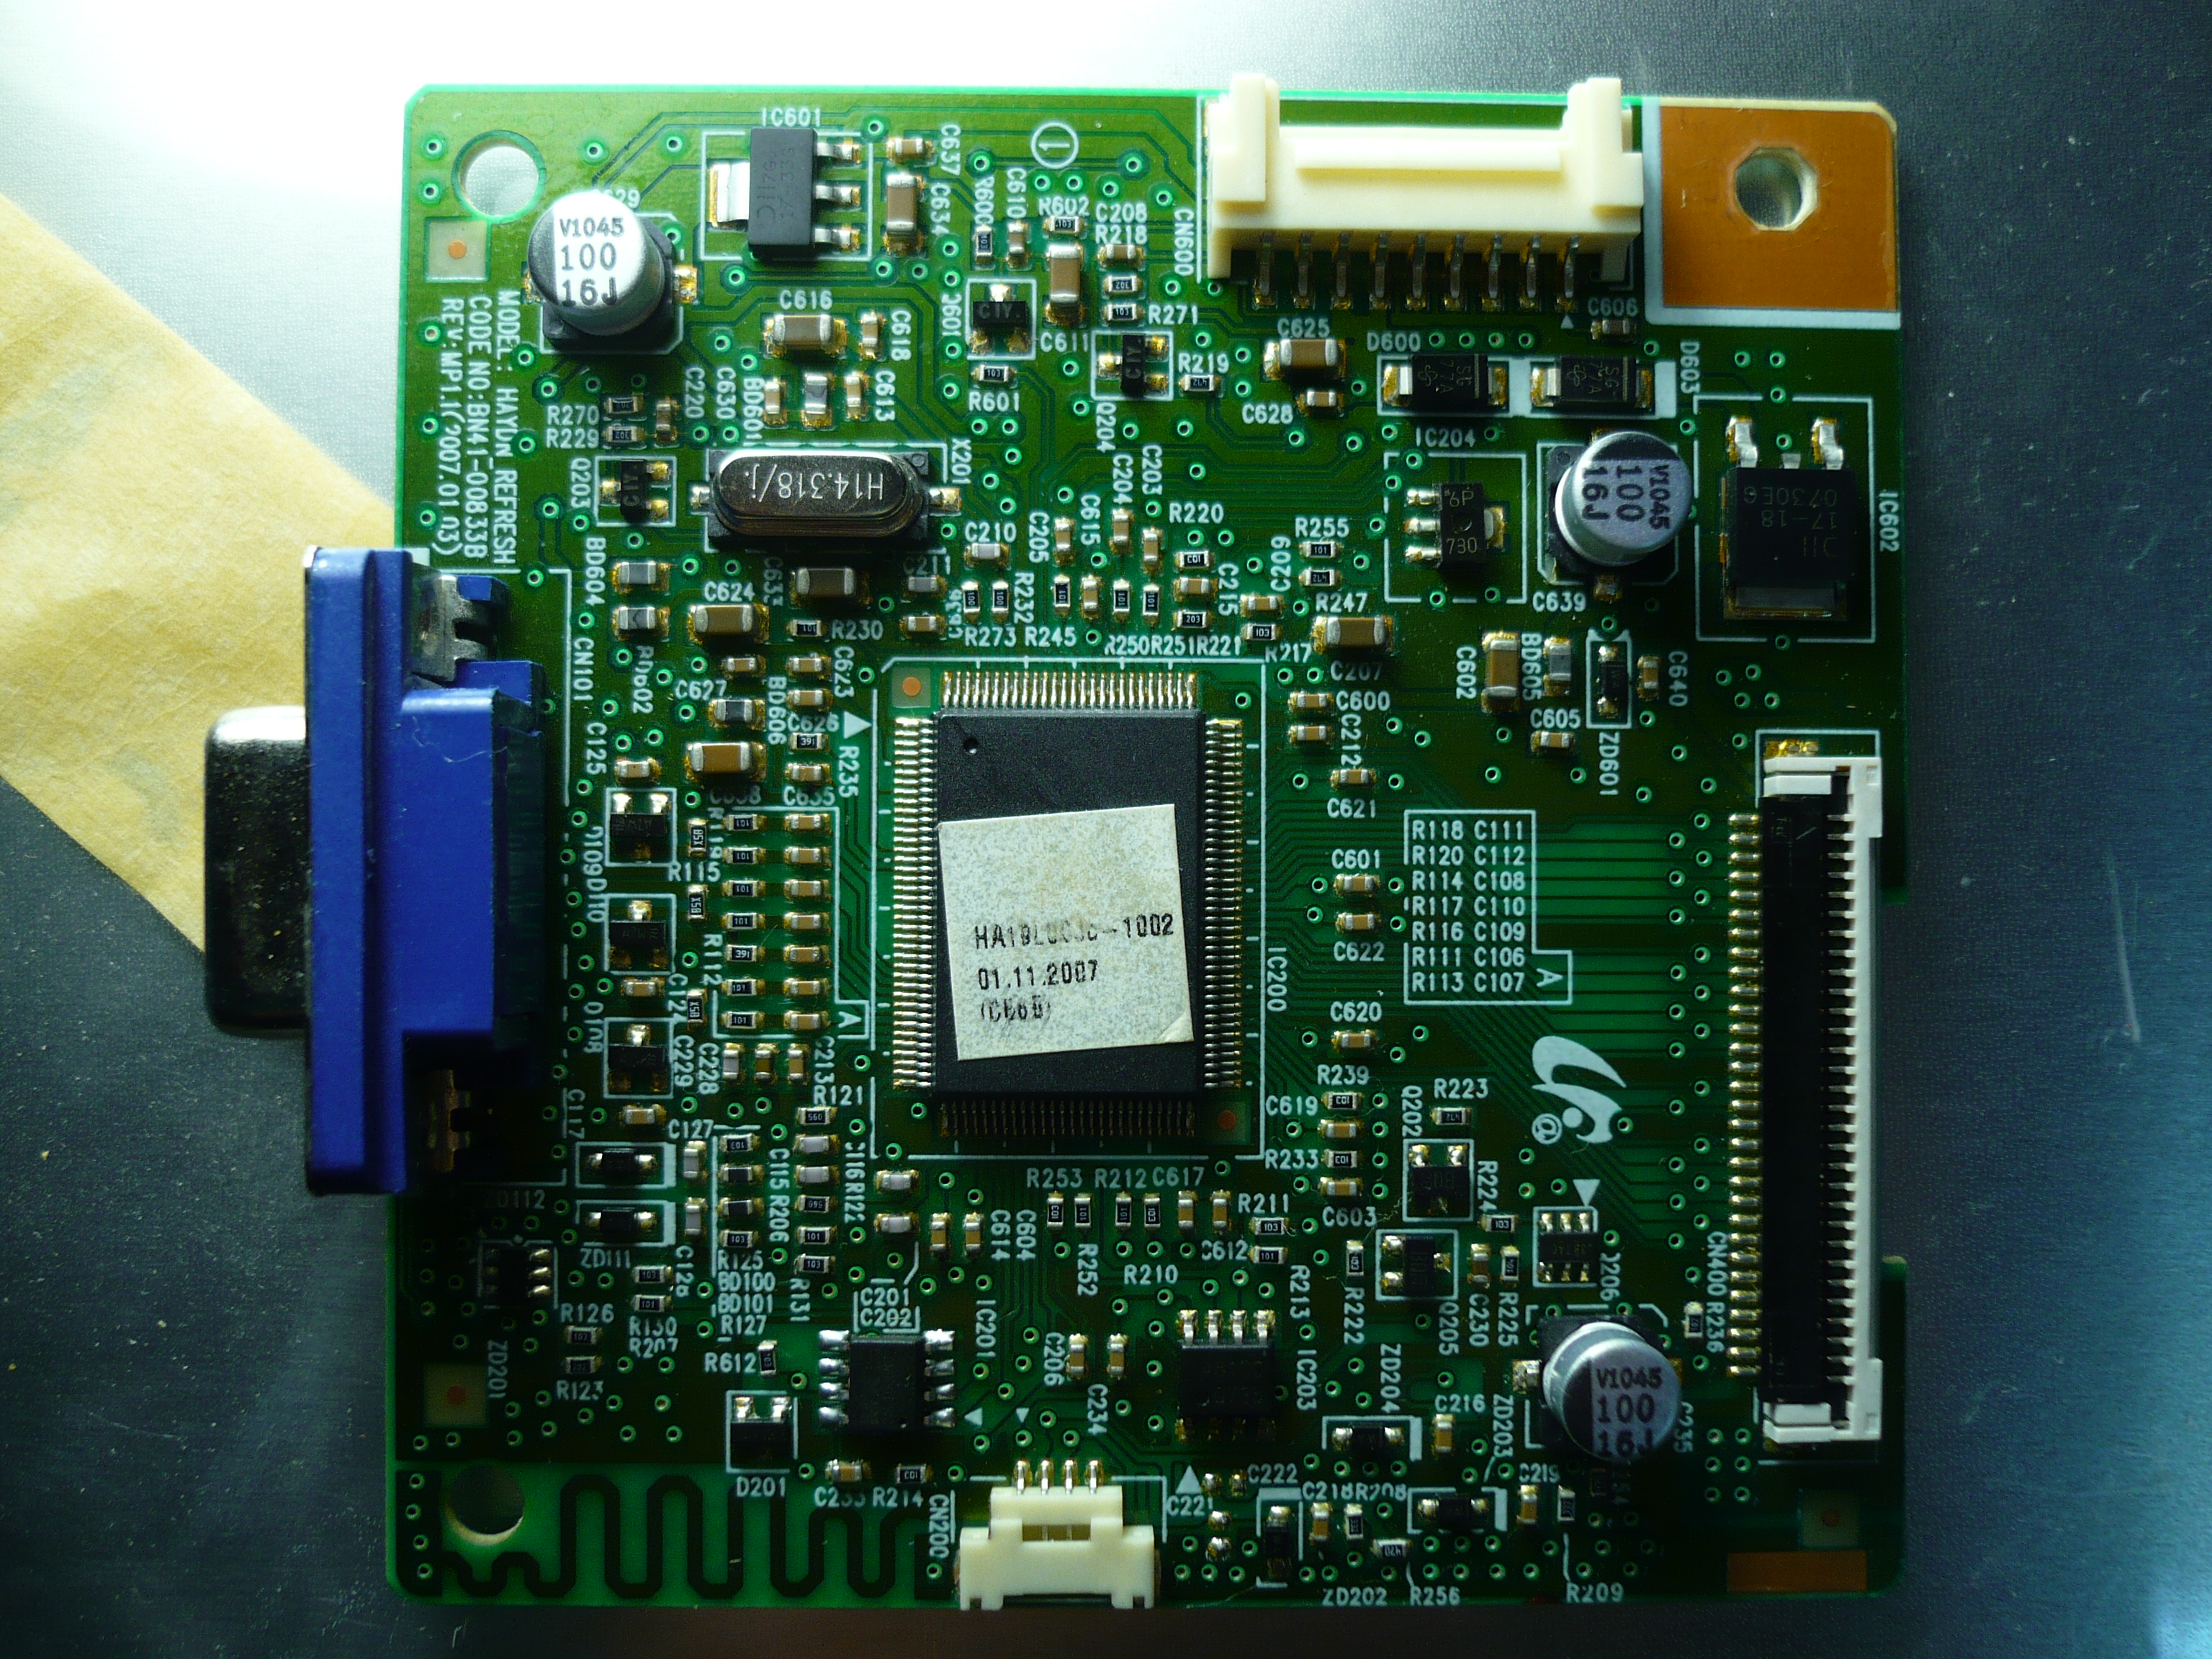   Samsung SyncMaster 940N